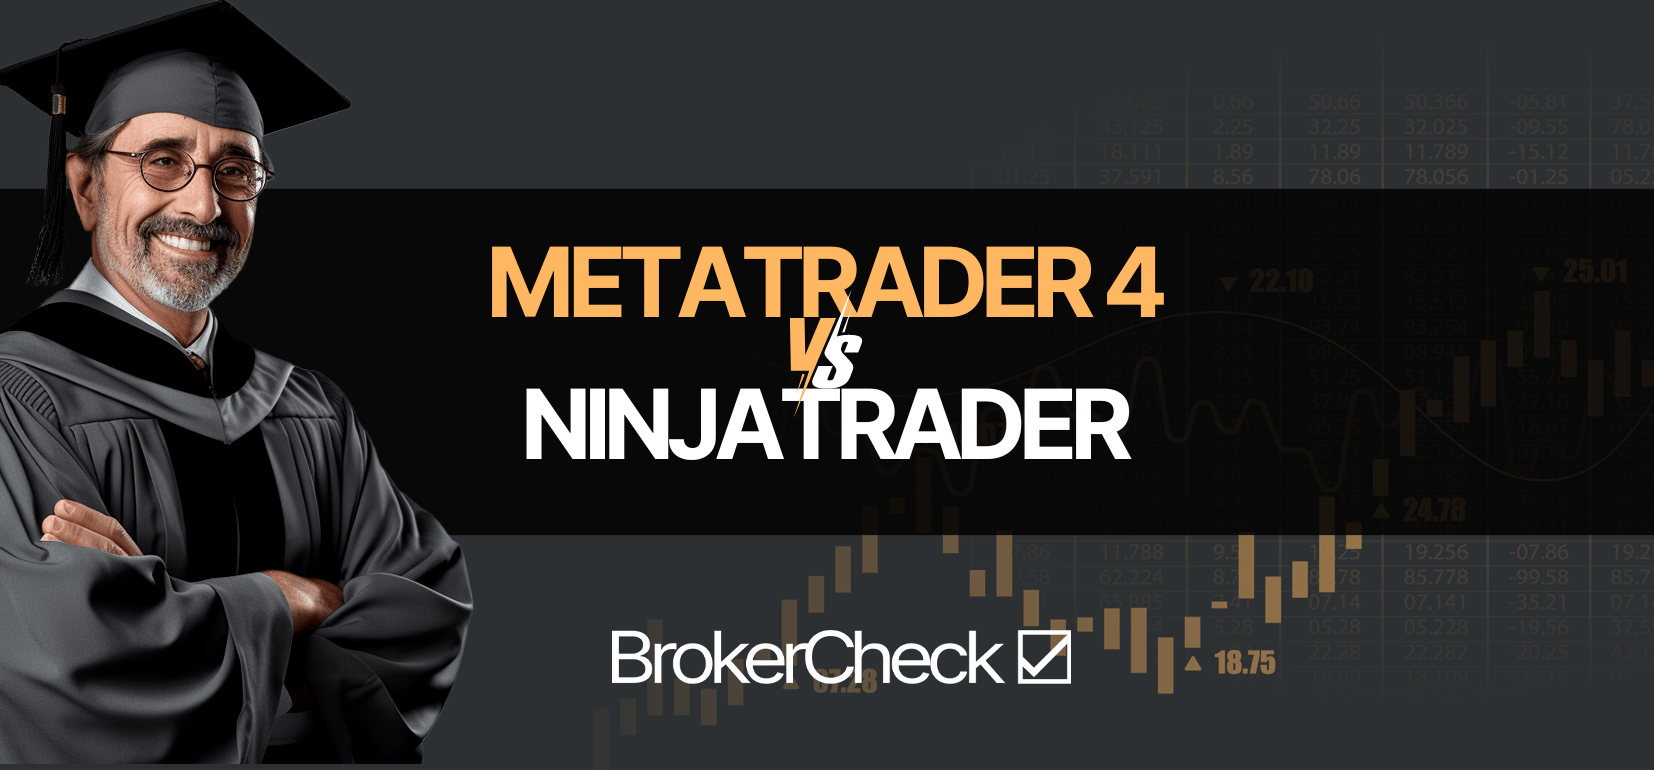 MetaTrader 4 กับนินจาTrader